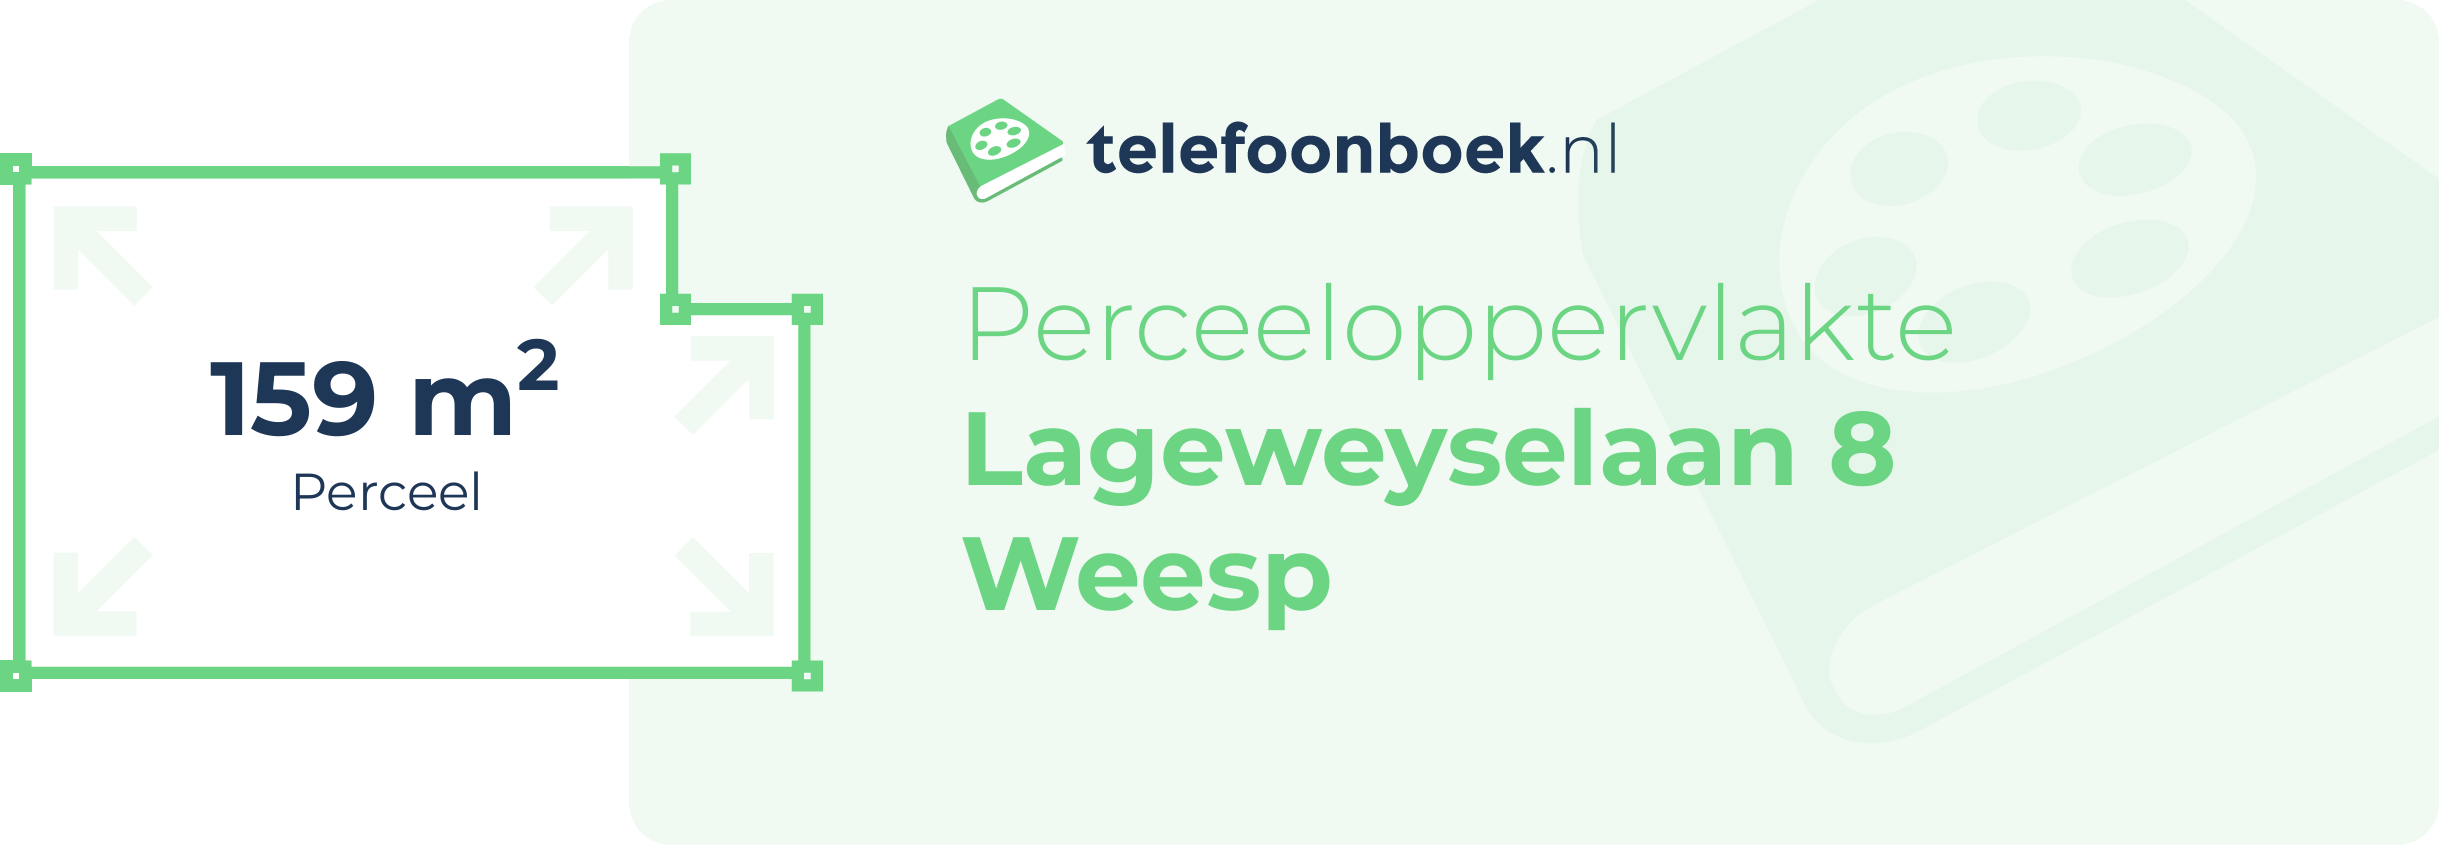 Perceeloppervlakte Lageweyselaan 8 Weesp